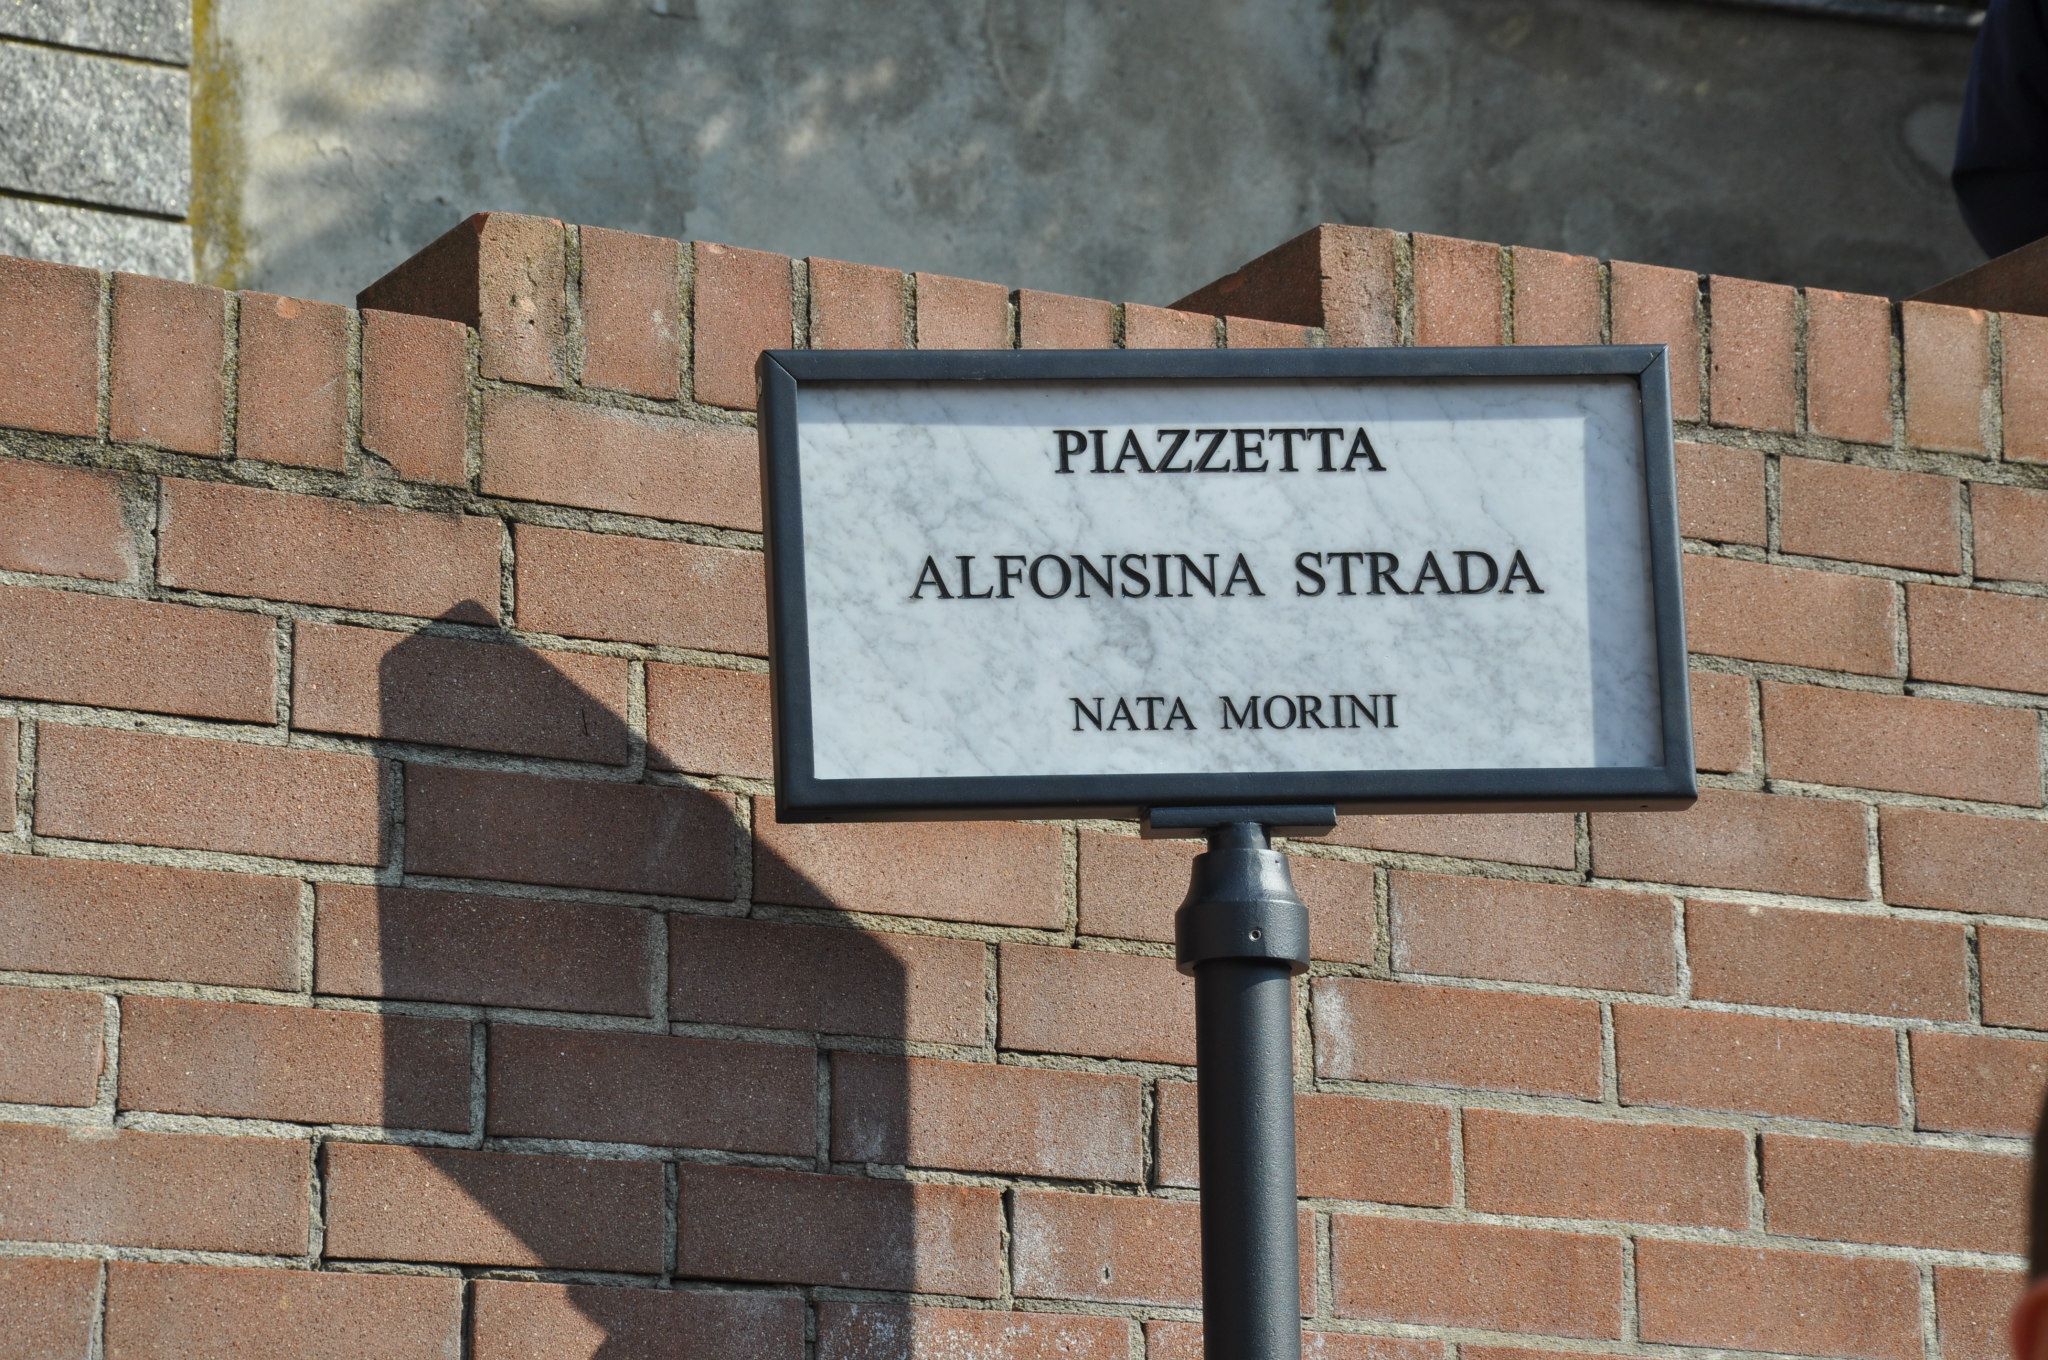 В честь Альфонсины Страда, единственной женщины гонки Джиро д'Италия, назвали площадь